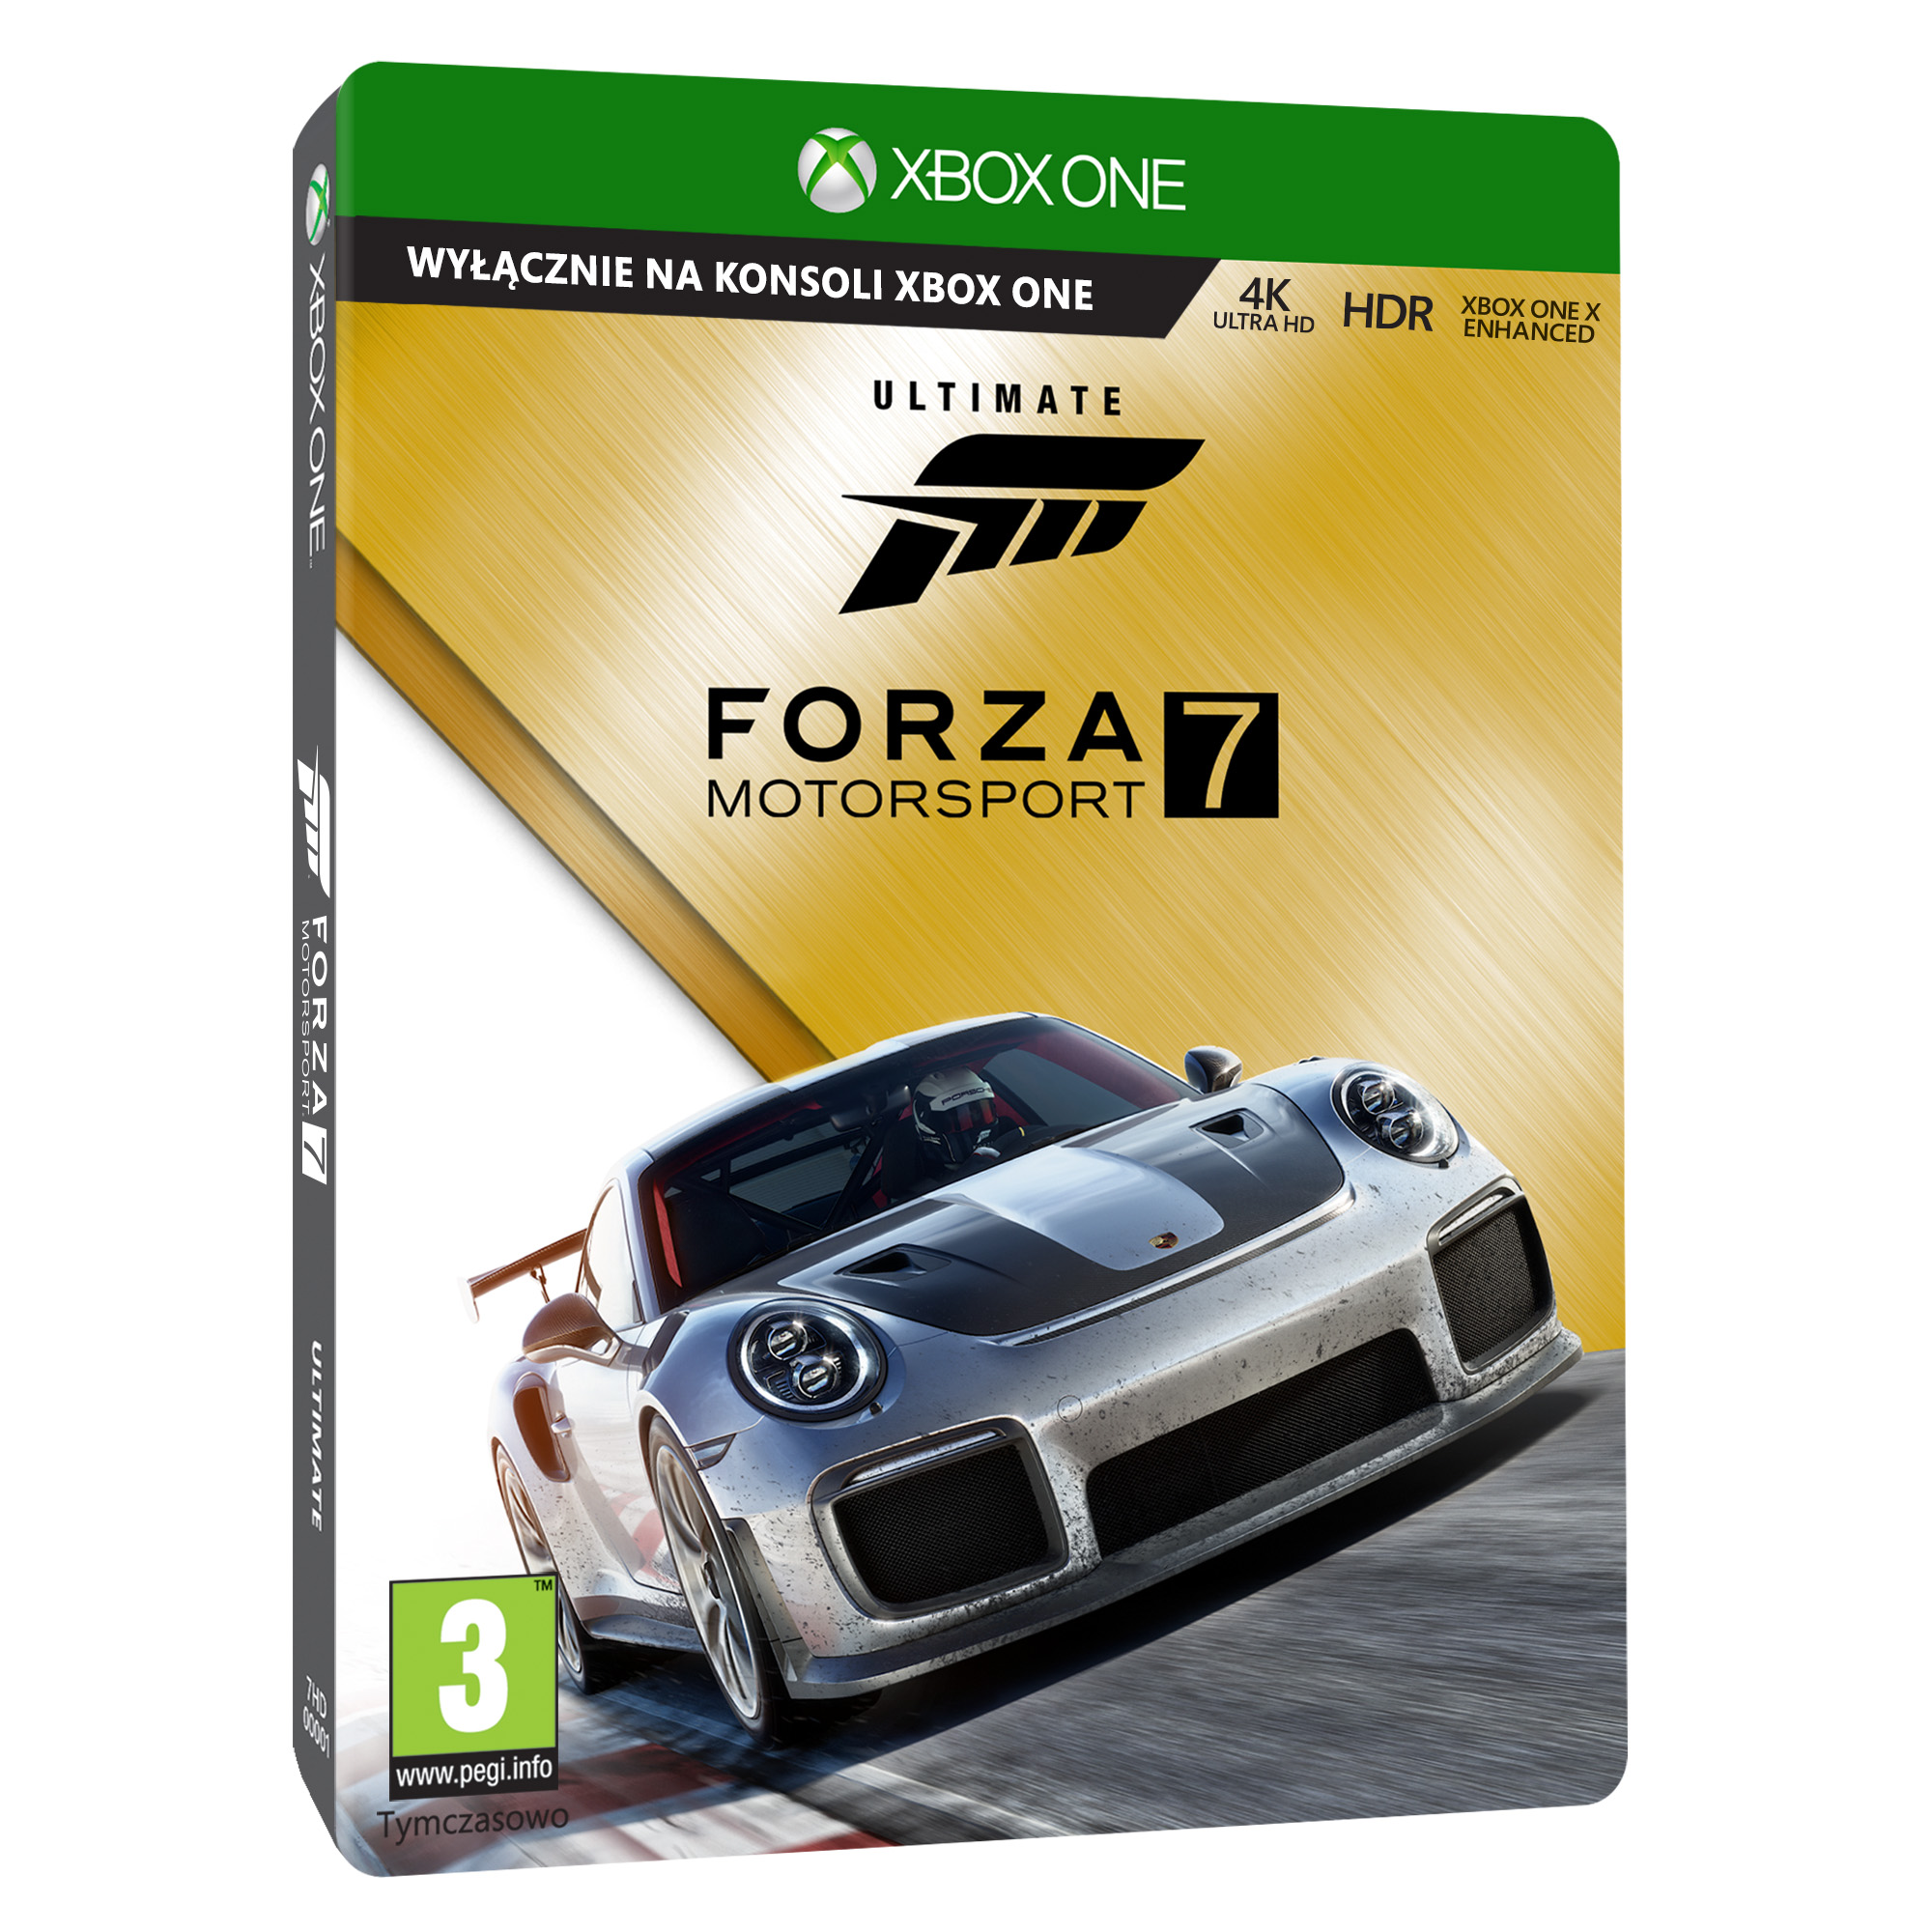 Forza Motorsport 7 dostępna na Xbox One i Windows 10